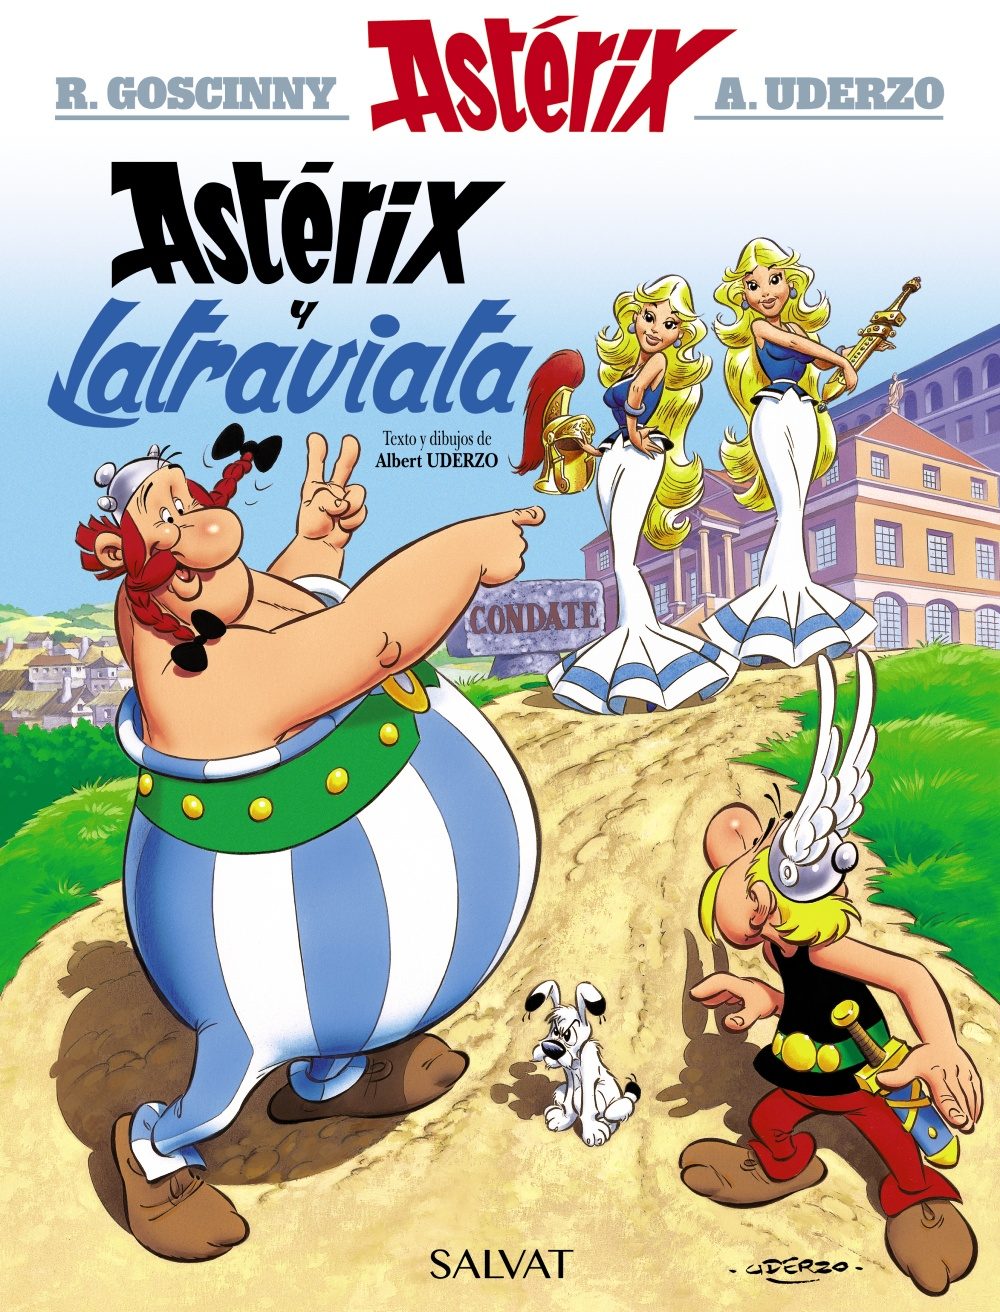 Resultado de imagen para albert uderzo - asterix and obelix comics